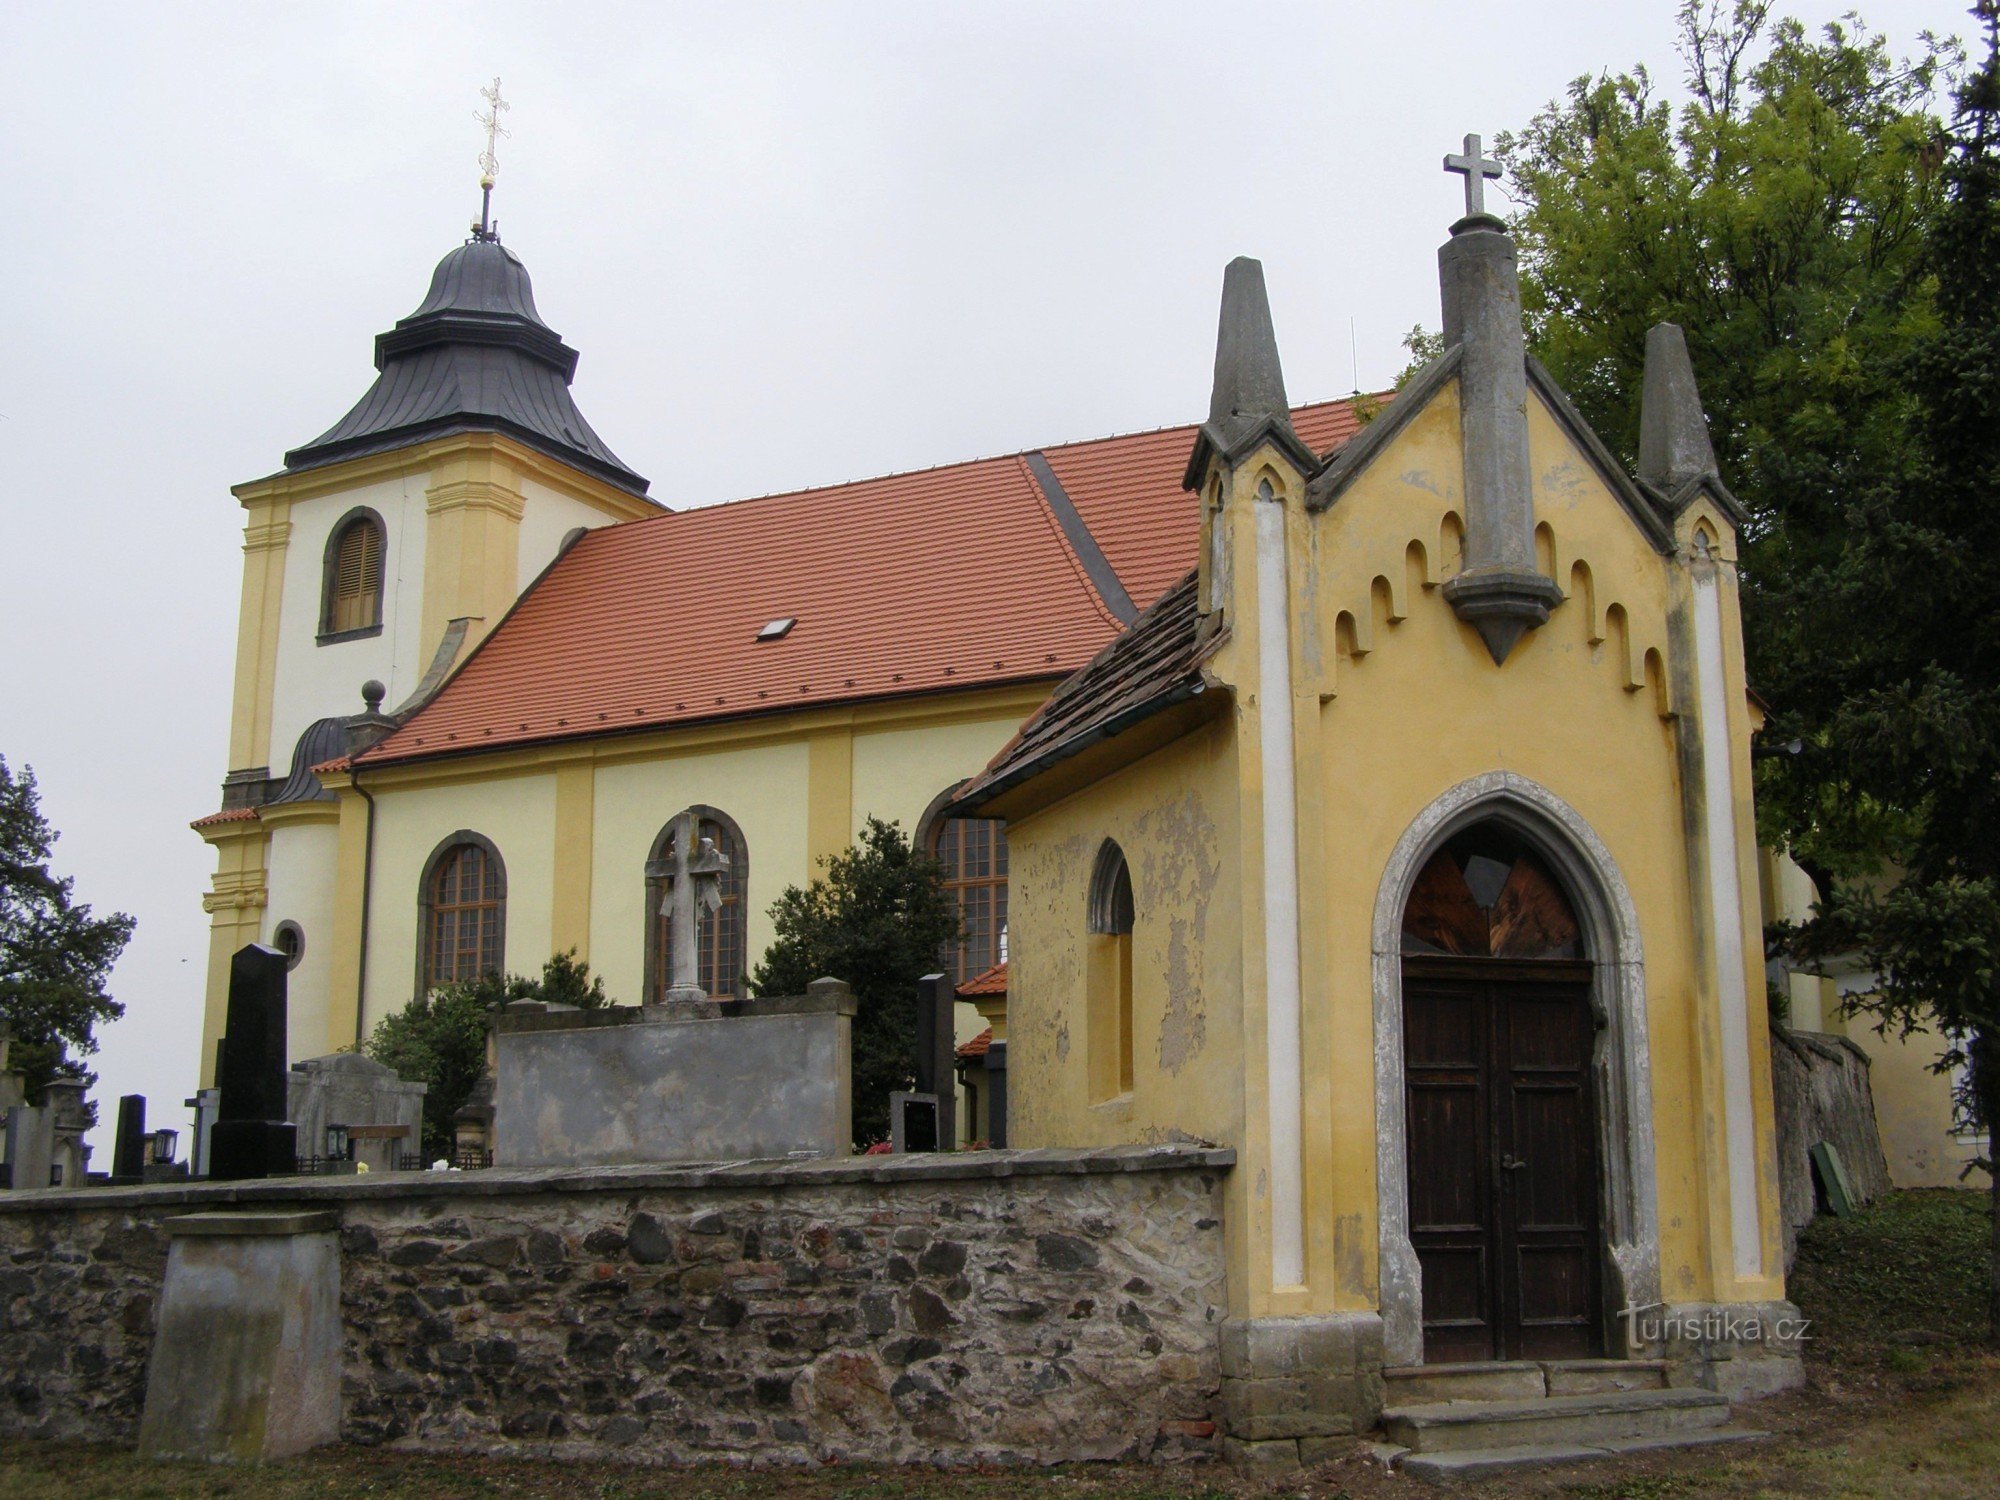 Mikulovice - Biserica Sf. Wenceslas